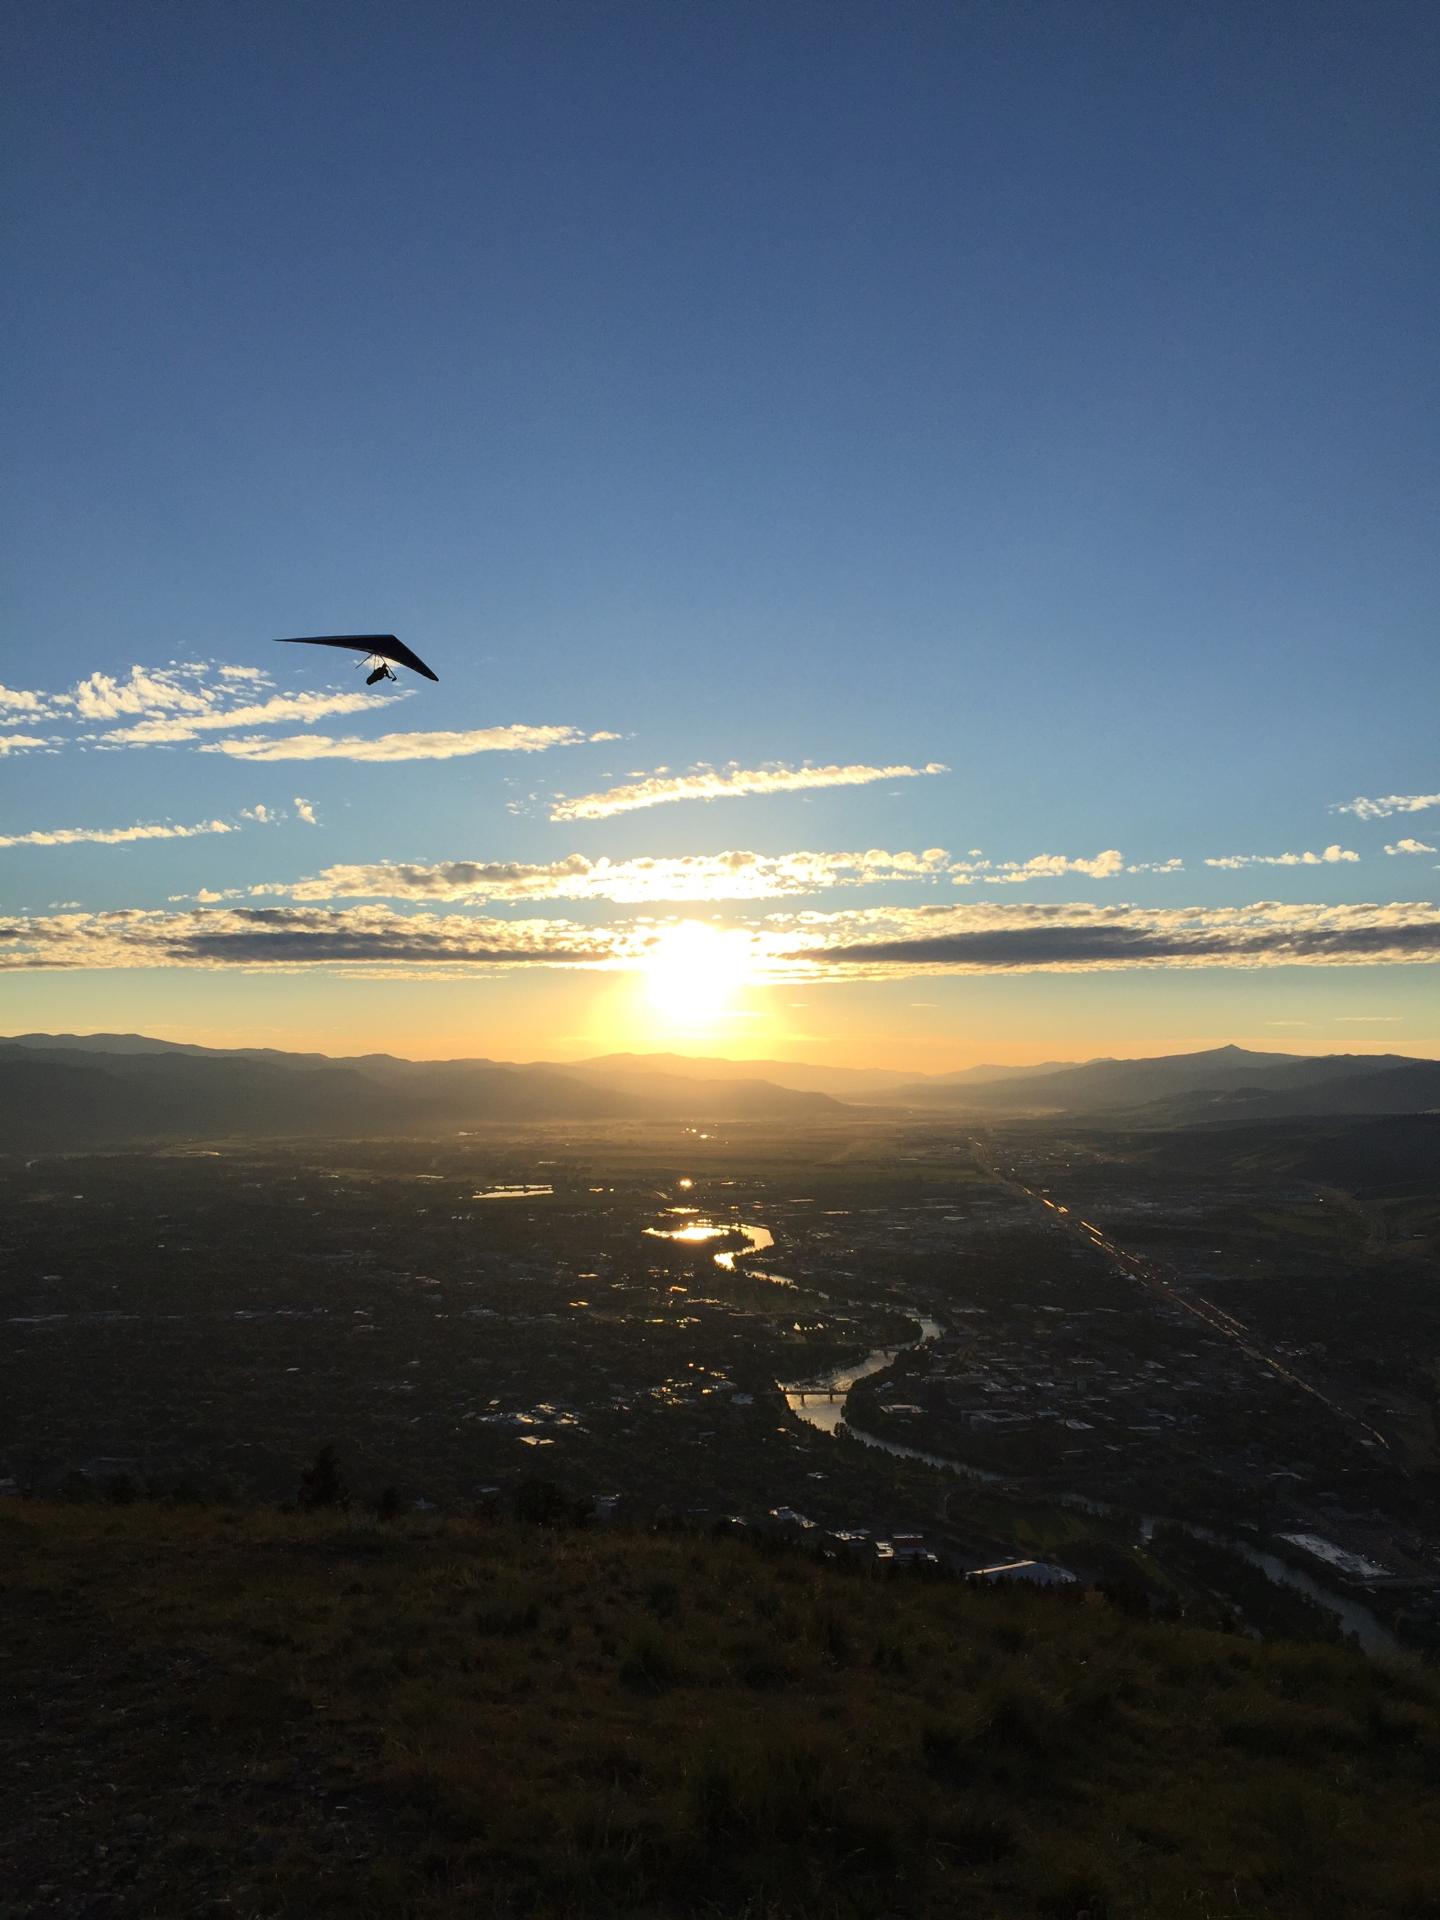 hang glider at sunset